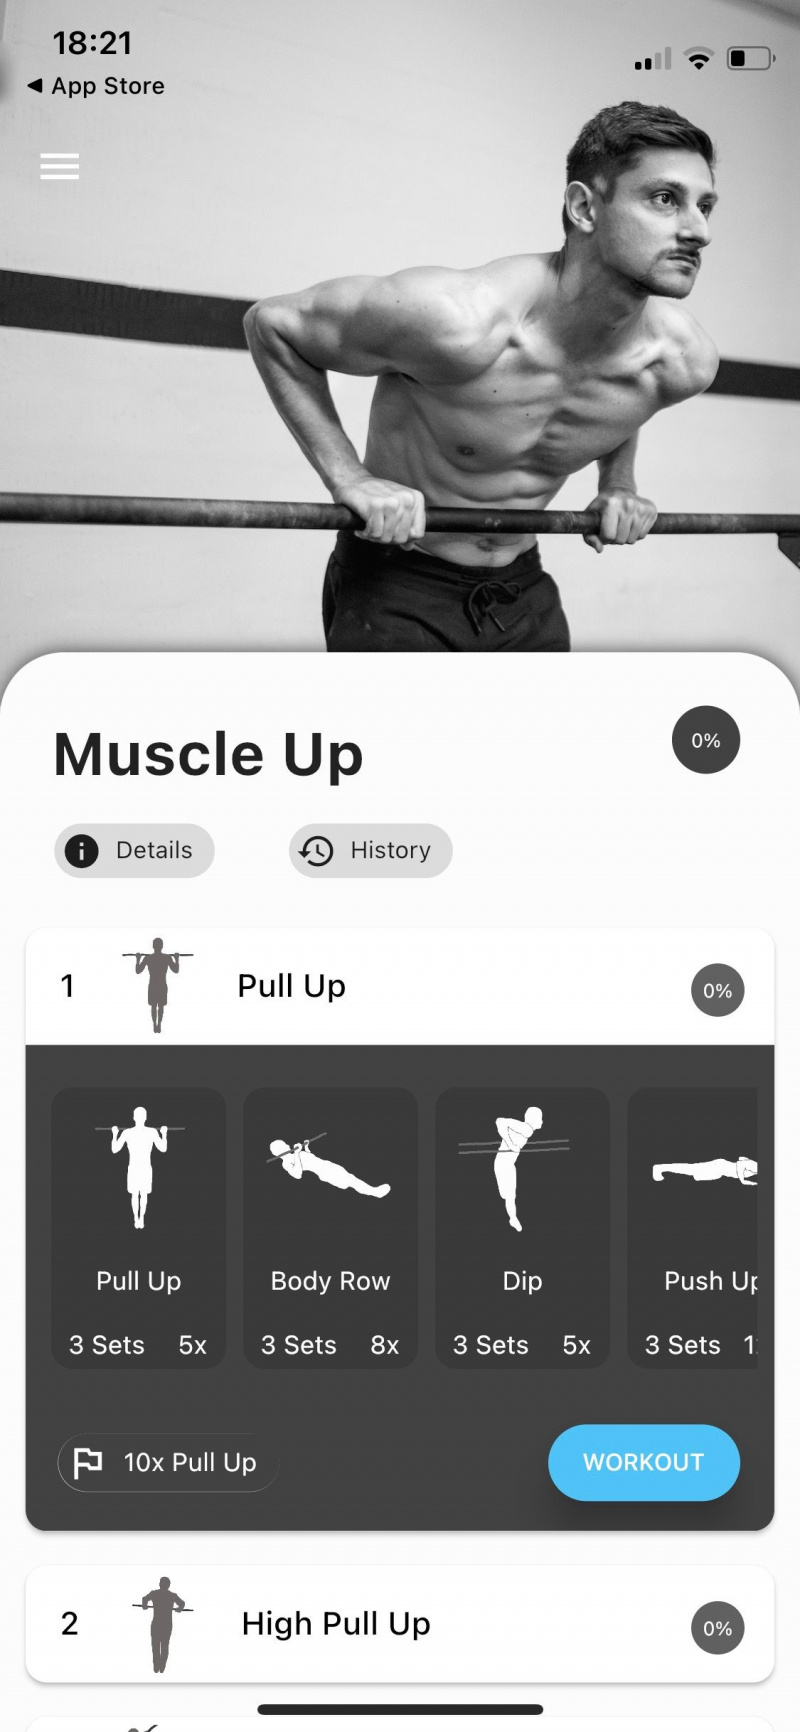   Captura de pantalla de la aplicación Thenics que muestra un entrenamiento muscular